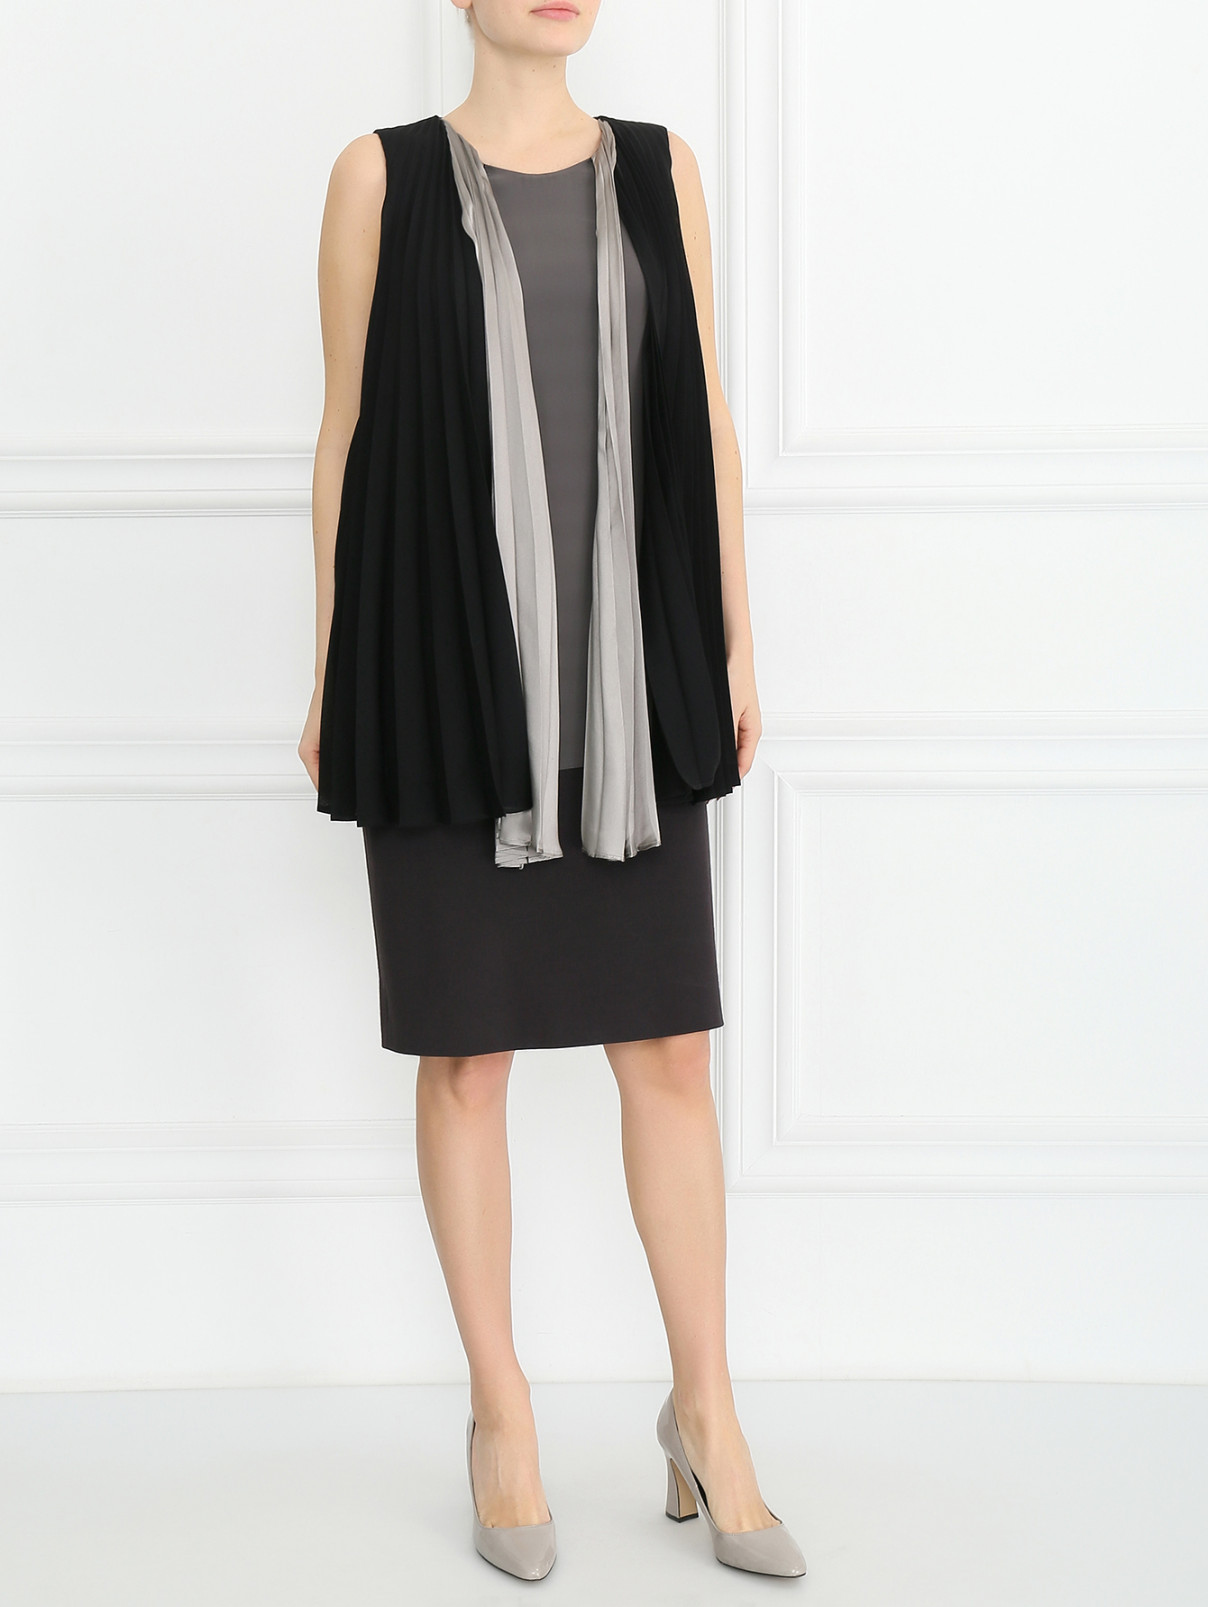 Платье-миди декорированное плиссировкой Maurizio Pecoraro  –  Модель Общий вид  – Цвет:  Черный